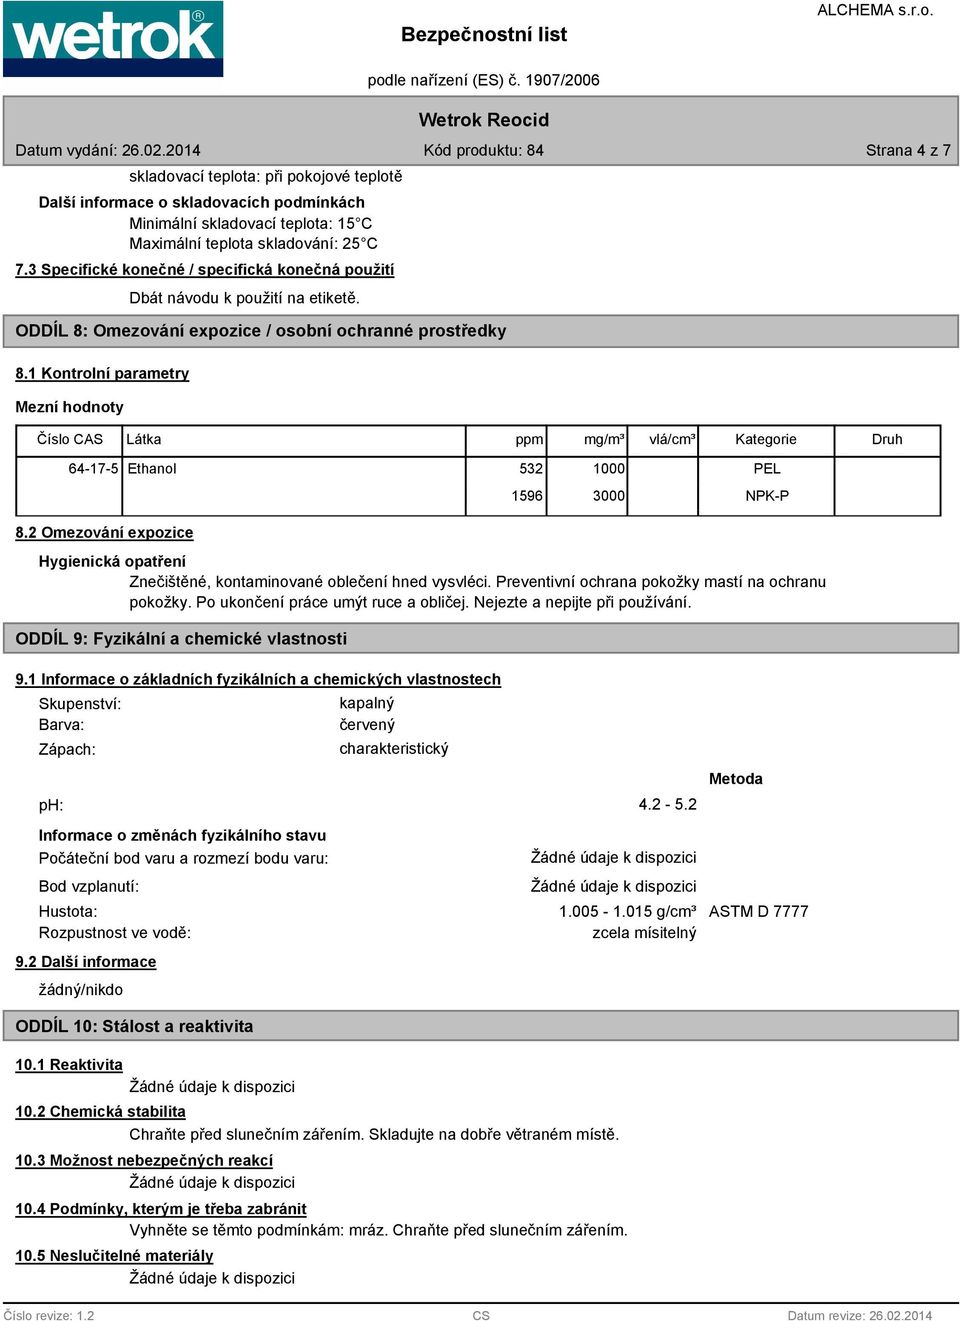 1 Kontrolní parametry Mezní hodnoty Číslo CAS Látka ppm mg/m³ vlá/cm³ Kategorie Druh 64-17-5 Ethanol 532 1000 1596 3000 PEL NPK-P 8.